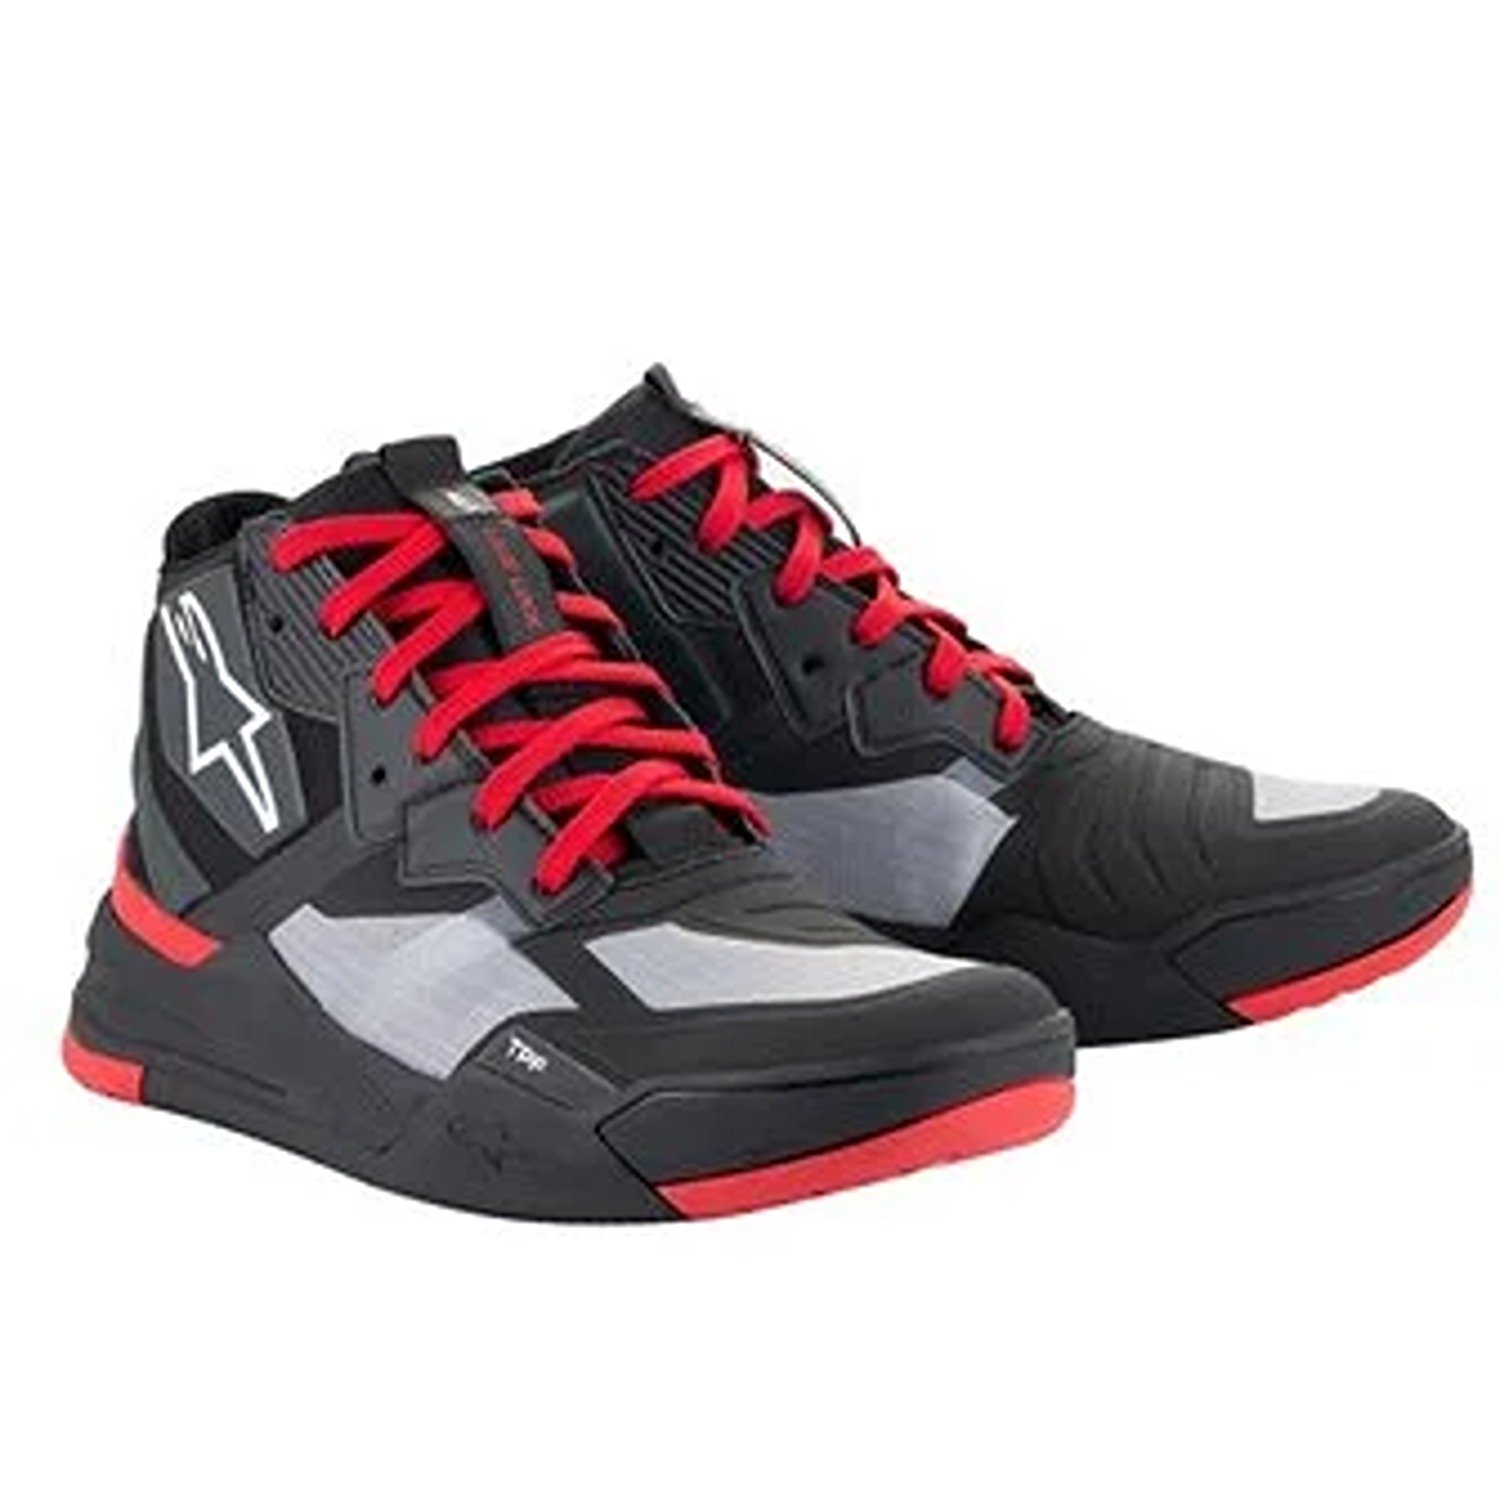 Image of Alpinestars Speedflight Shoes Black Bright Red White Größe US 14